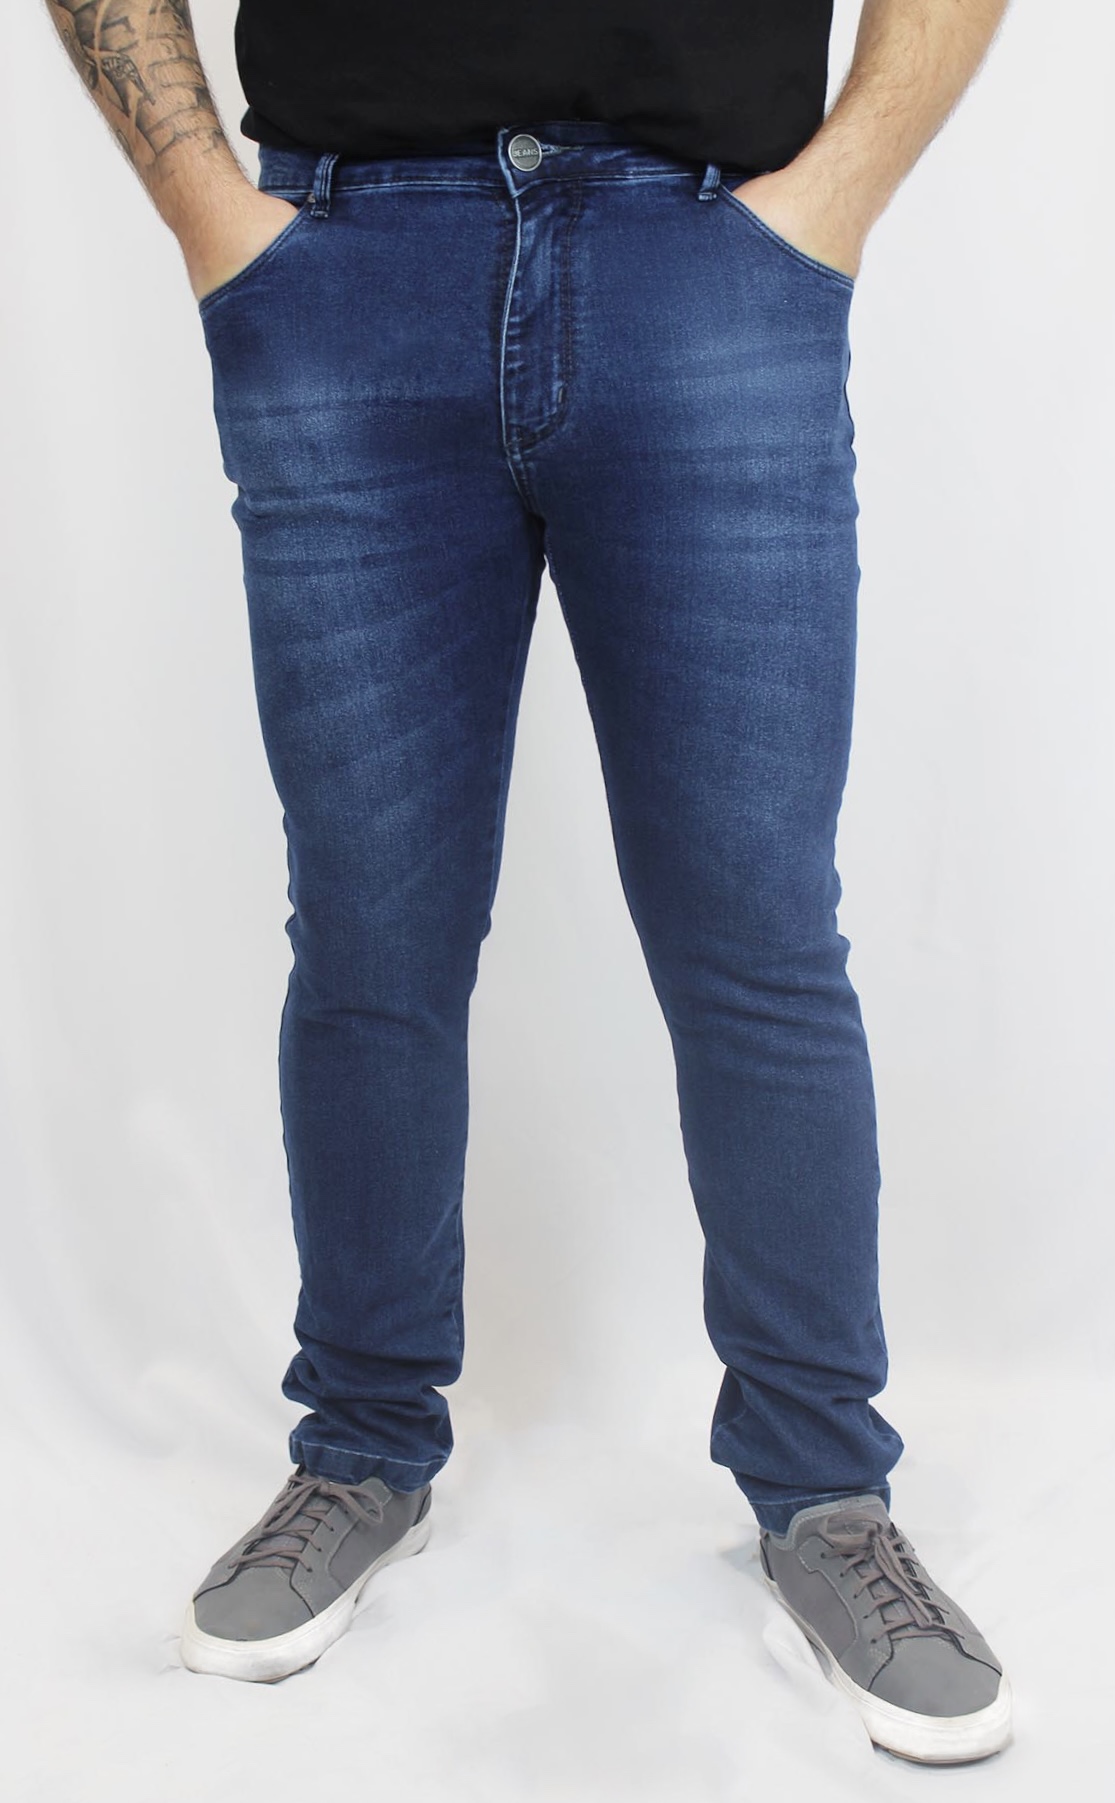 Calça Jeans Slim com Elastano Estonada Garcez Masculina - Azul